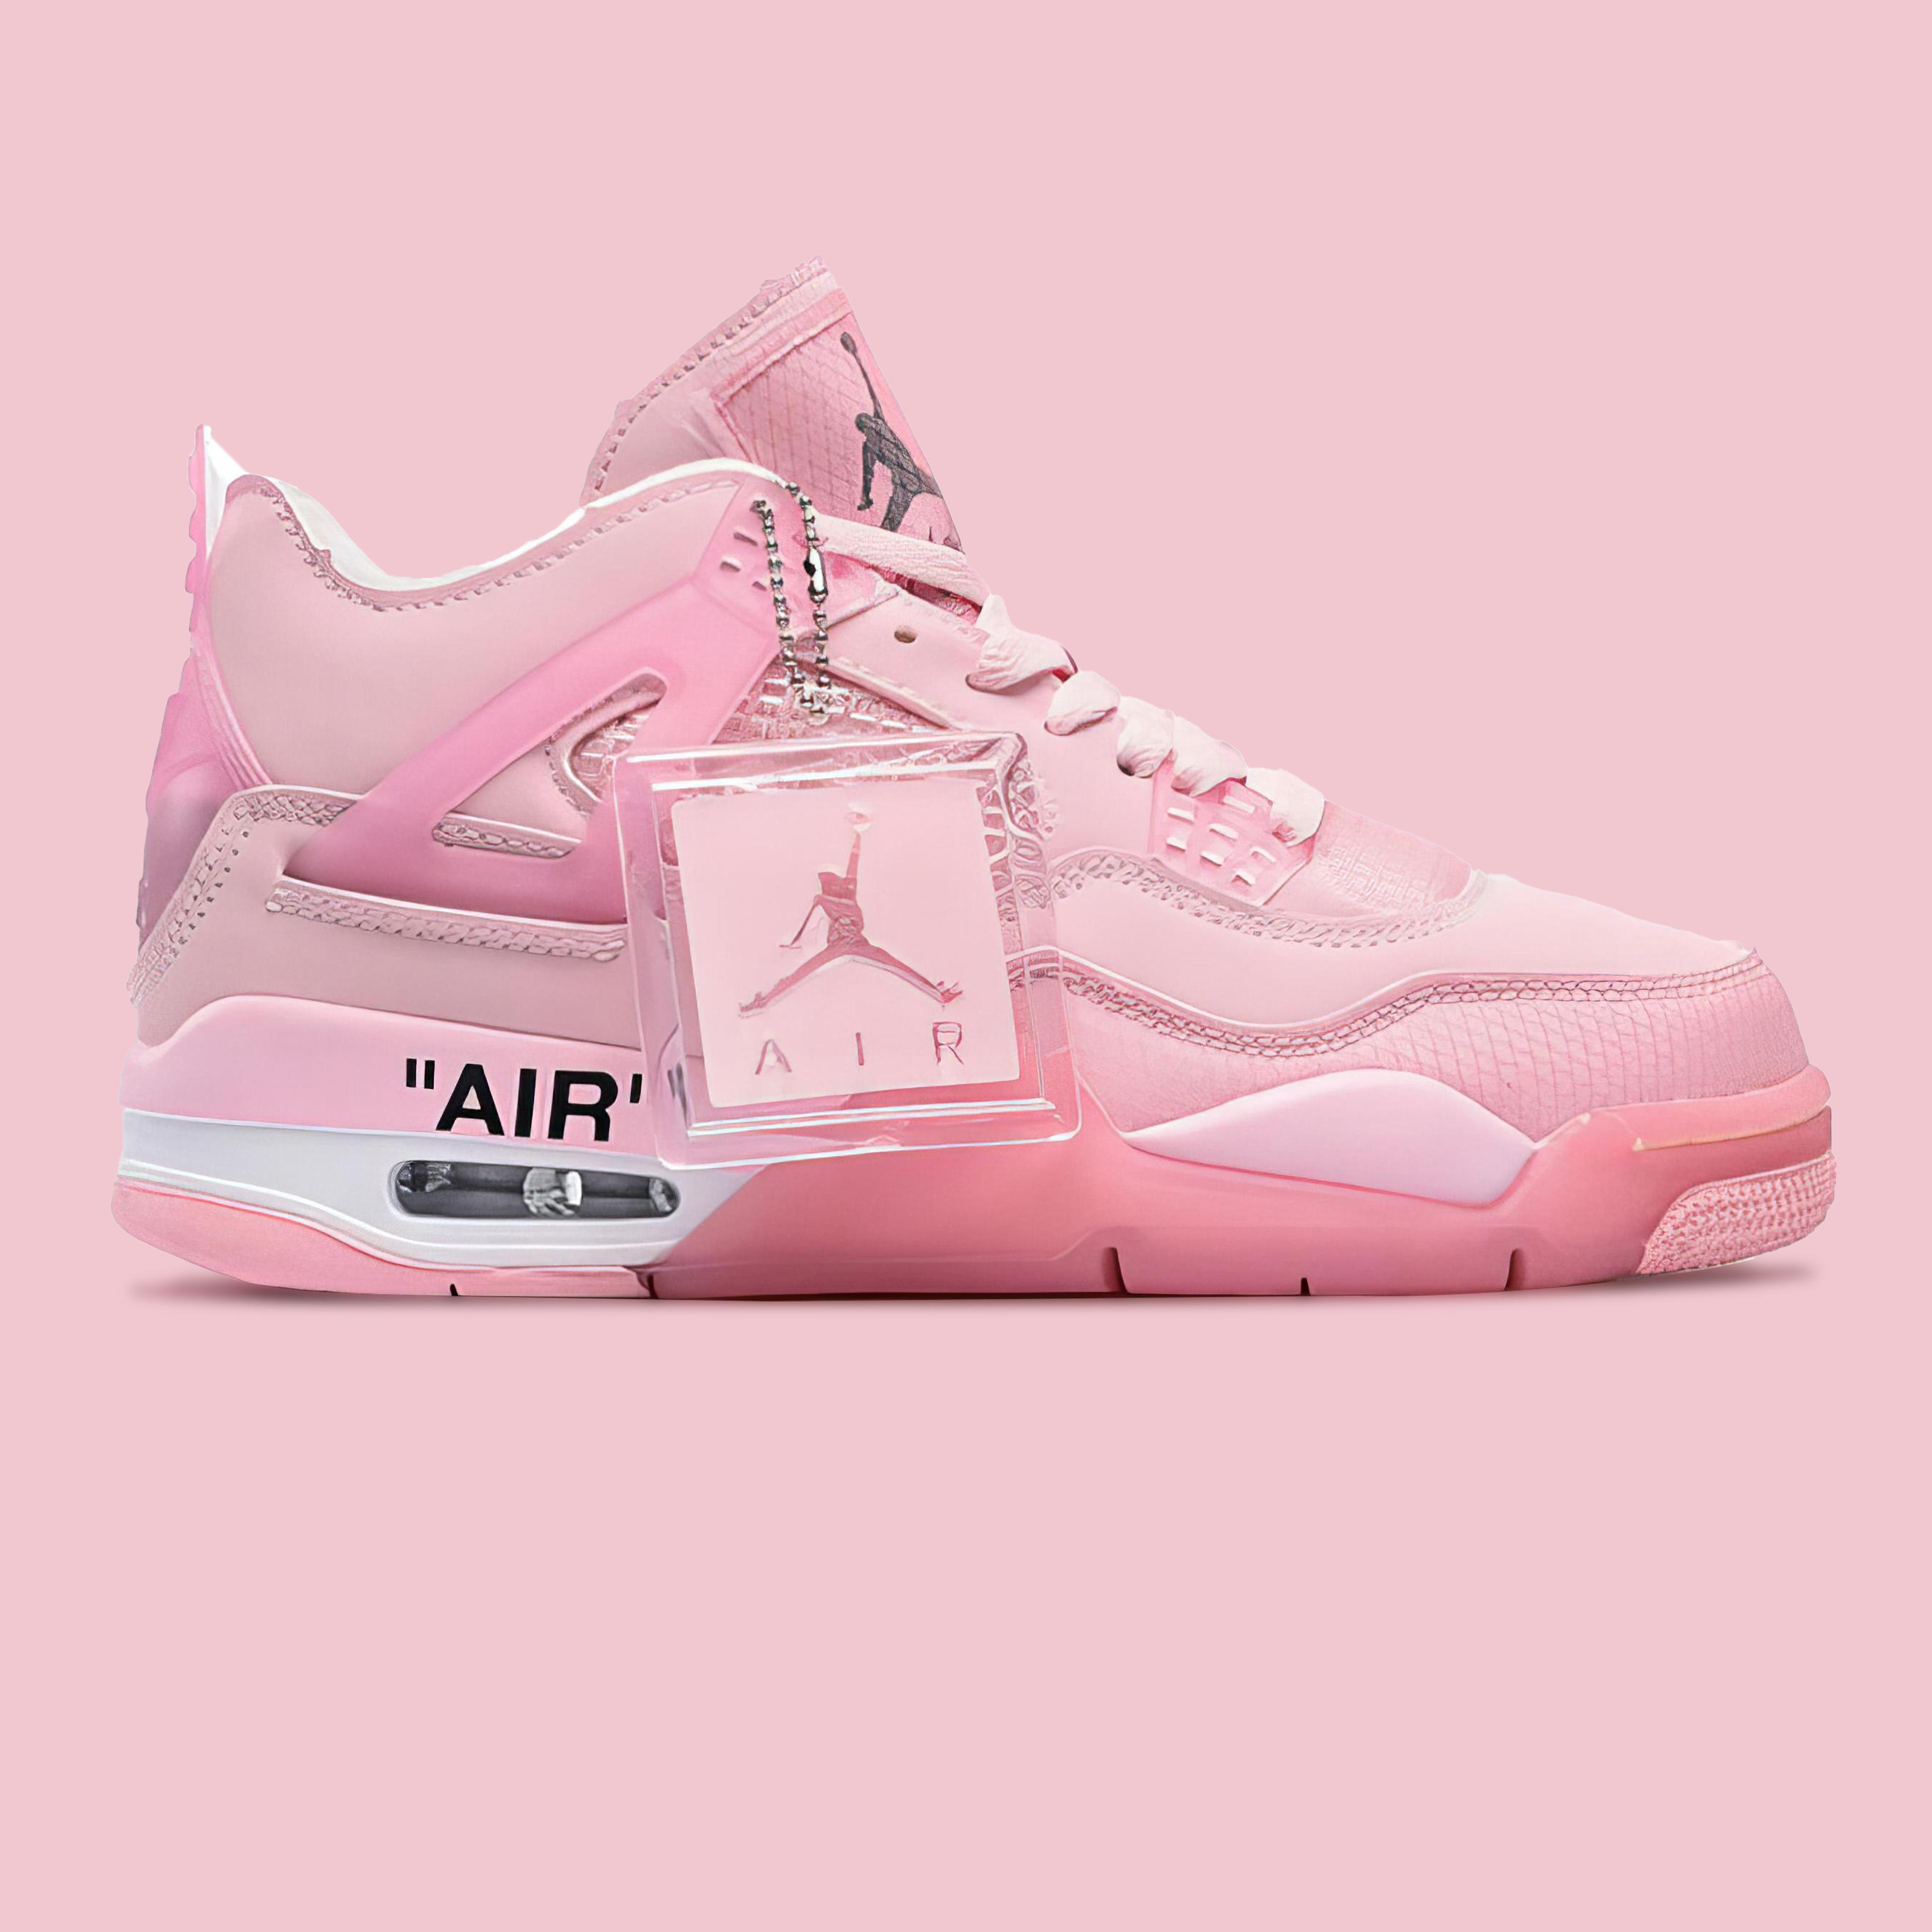 Air Jordan 4 Retro Off-White Pastel Pink